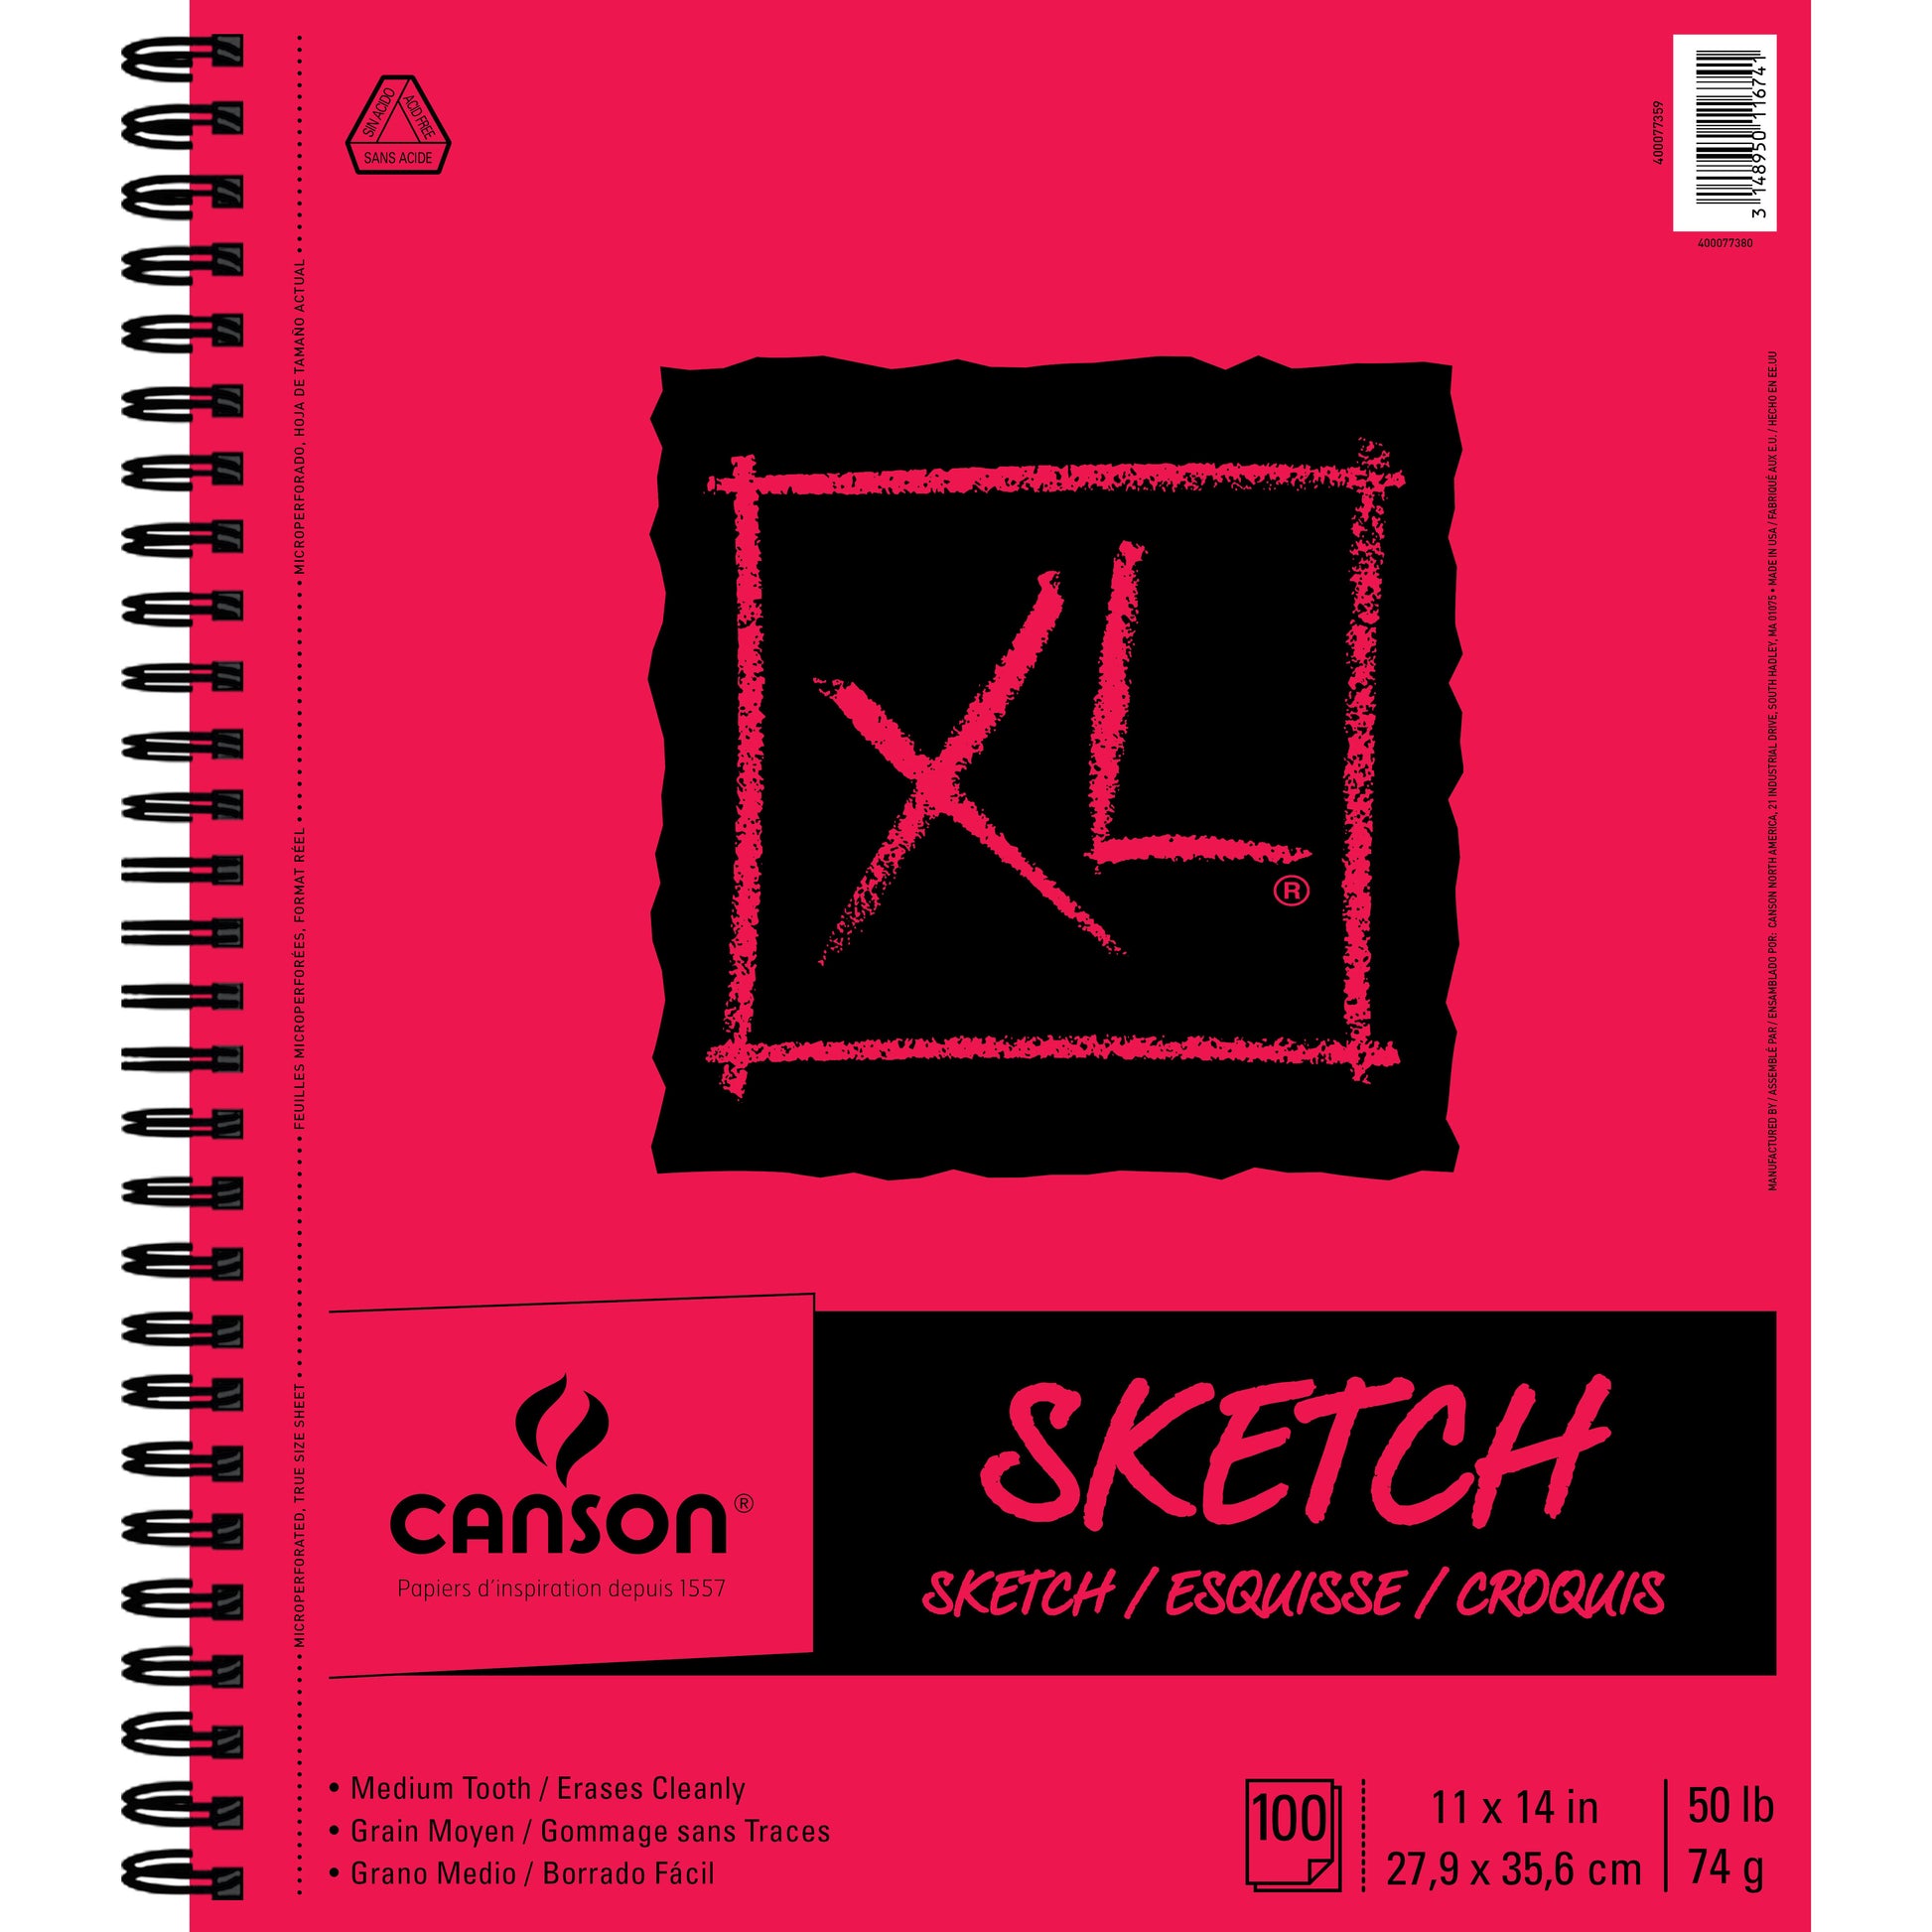 Canson XL Mix-Media Pad 5.5 x 8.5